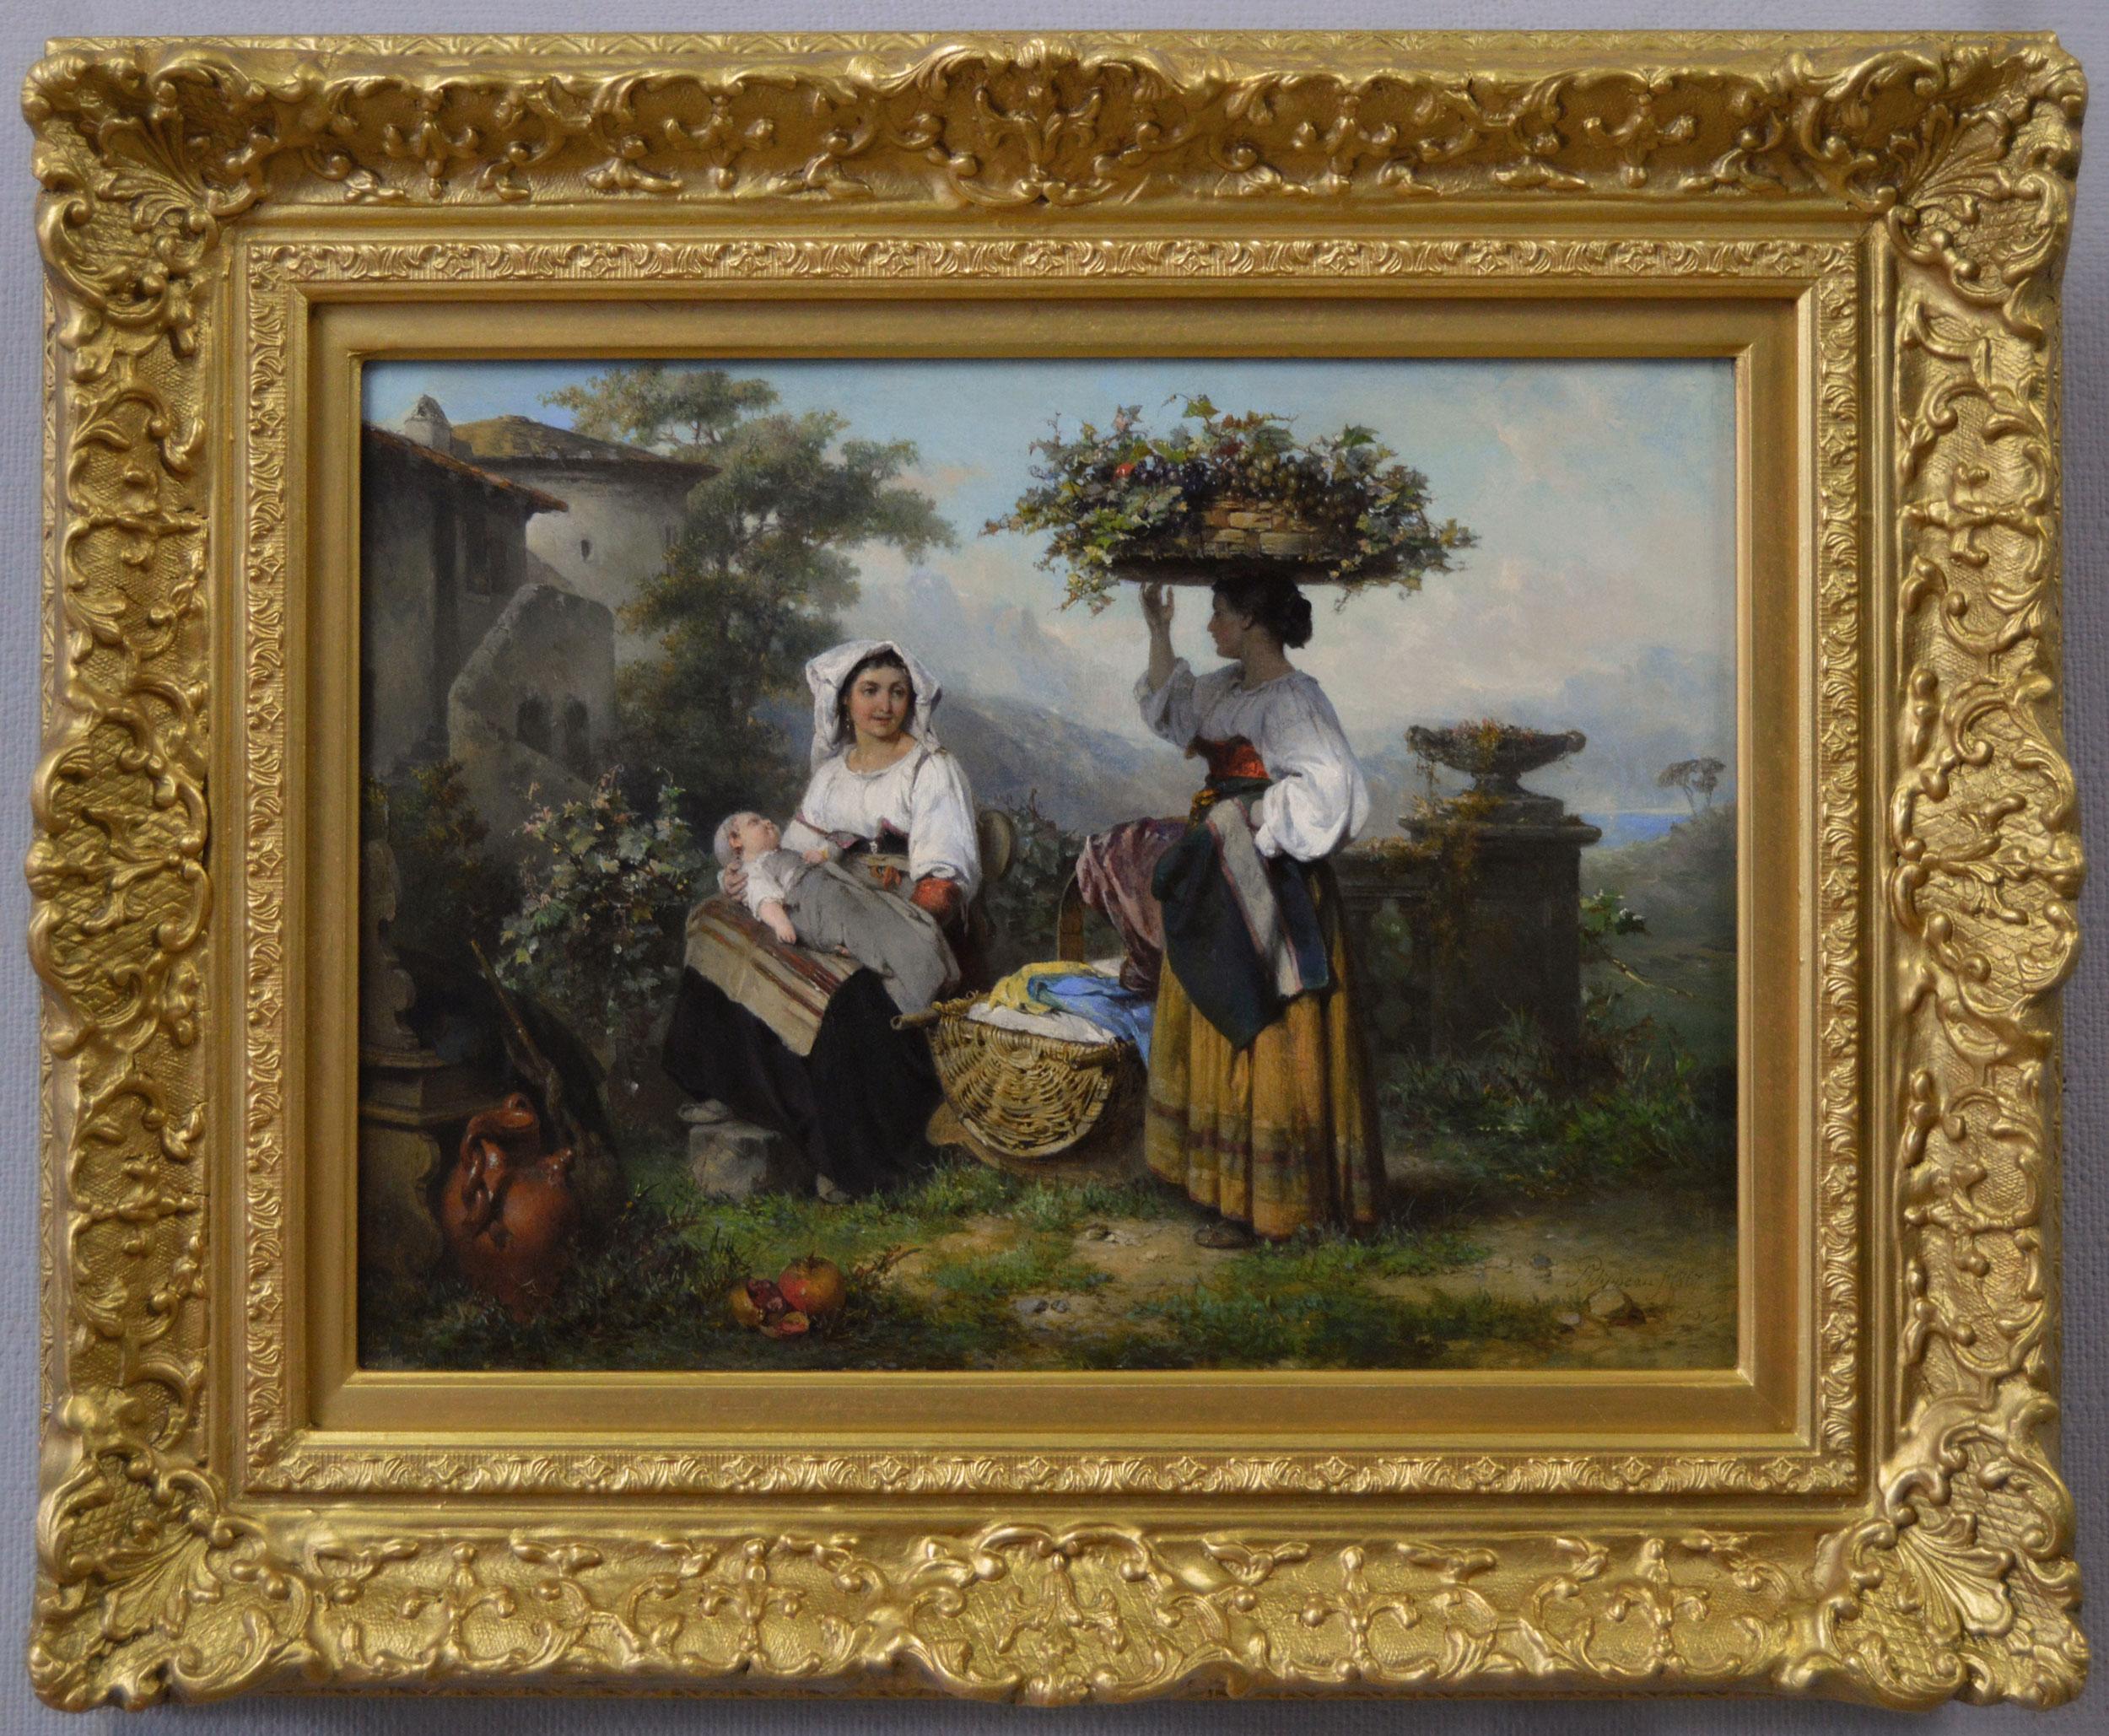 19th Century genre landscape oil painting of two Italian women near a vineyard